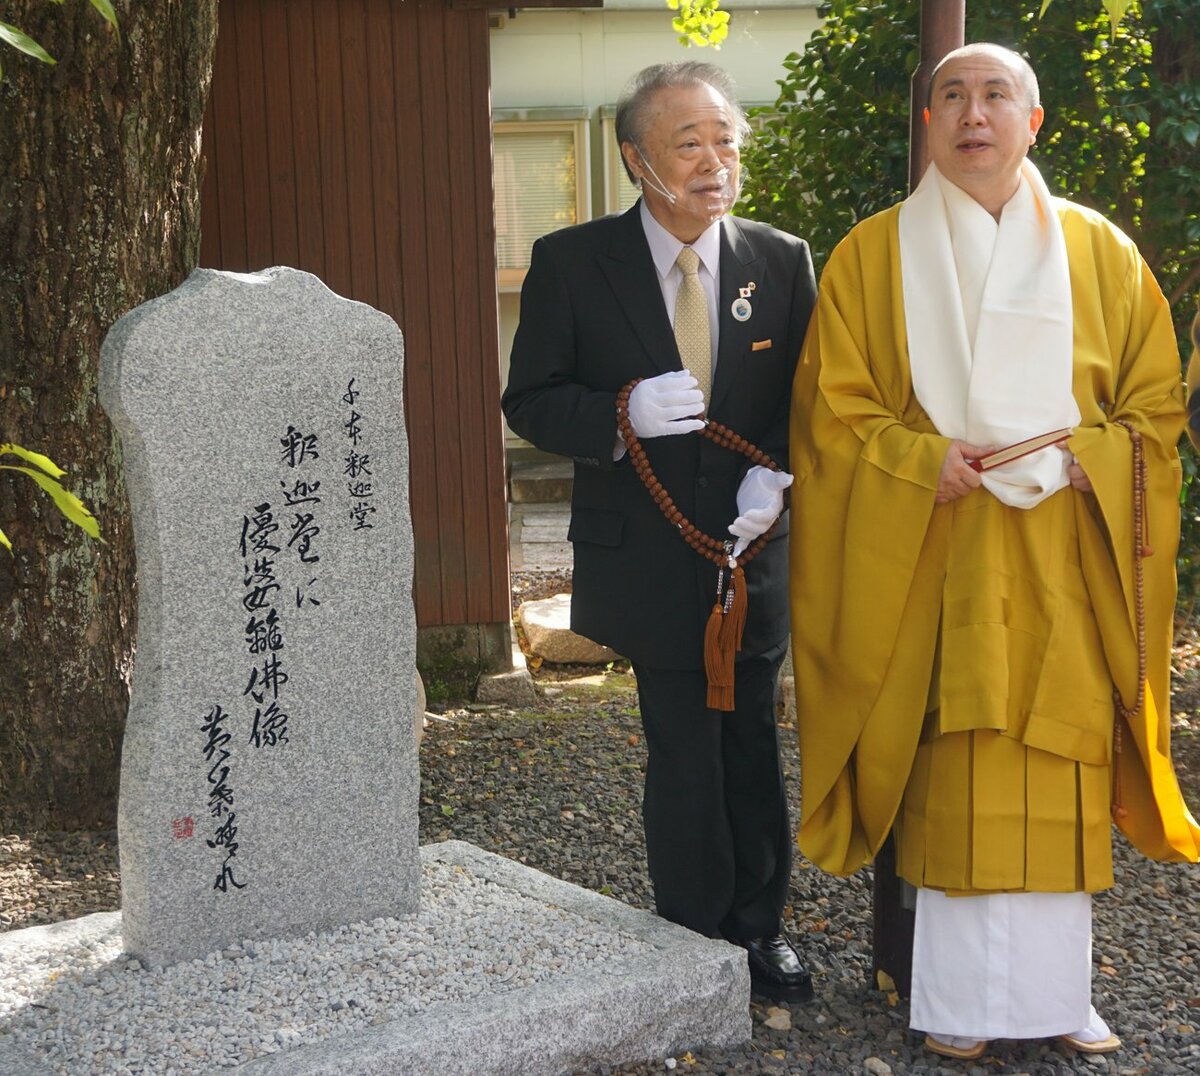 「理容遺産」に京都の仏像!?　全国８番目、「理容業の原点を象徴する」と評価